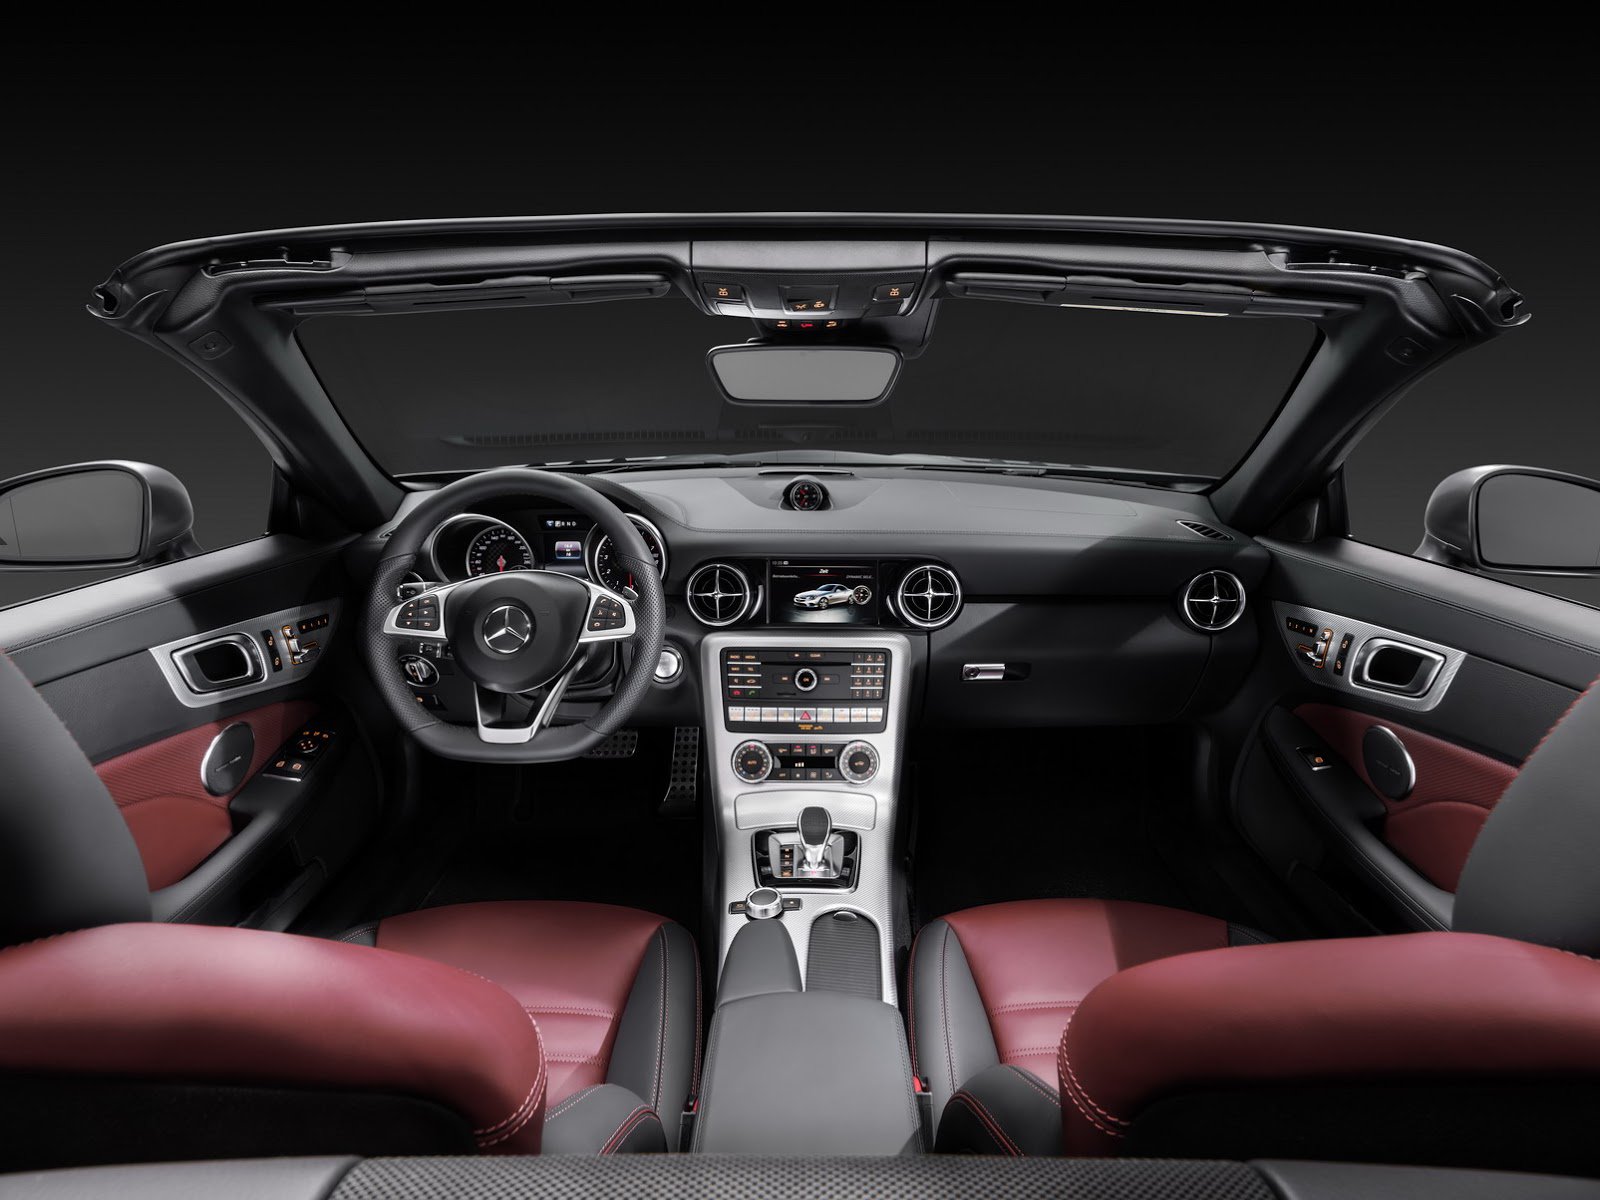 Nový je volant, větší displej infotainmentu, Mercedes-Benz SLC.